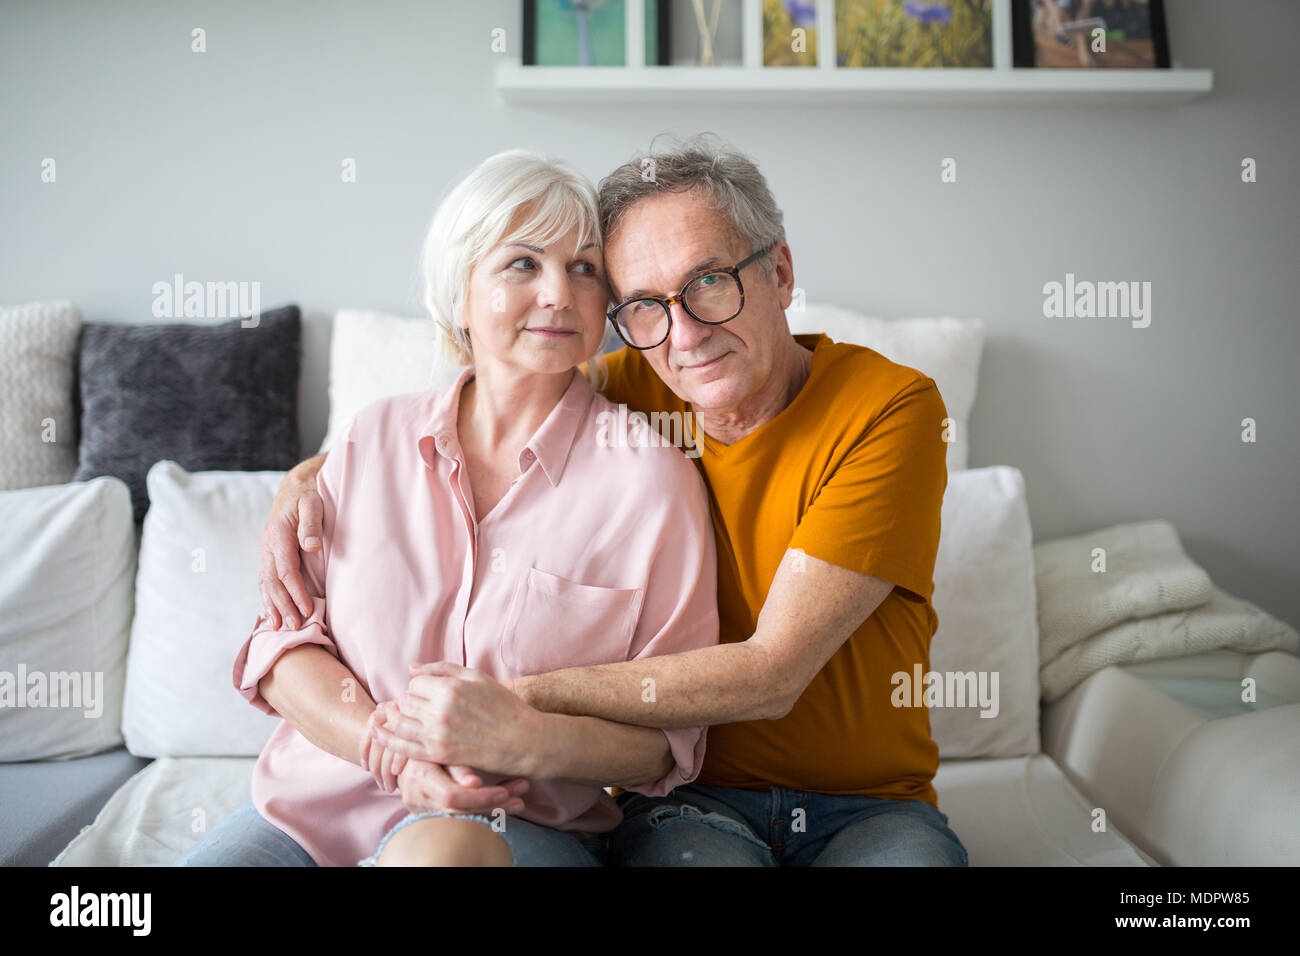 Ritratto di felice matrimonio senior abbracciando insieme sul lettino Foto Stock